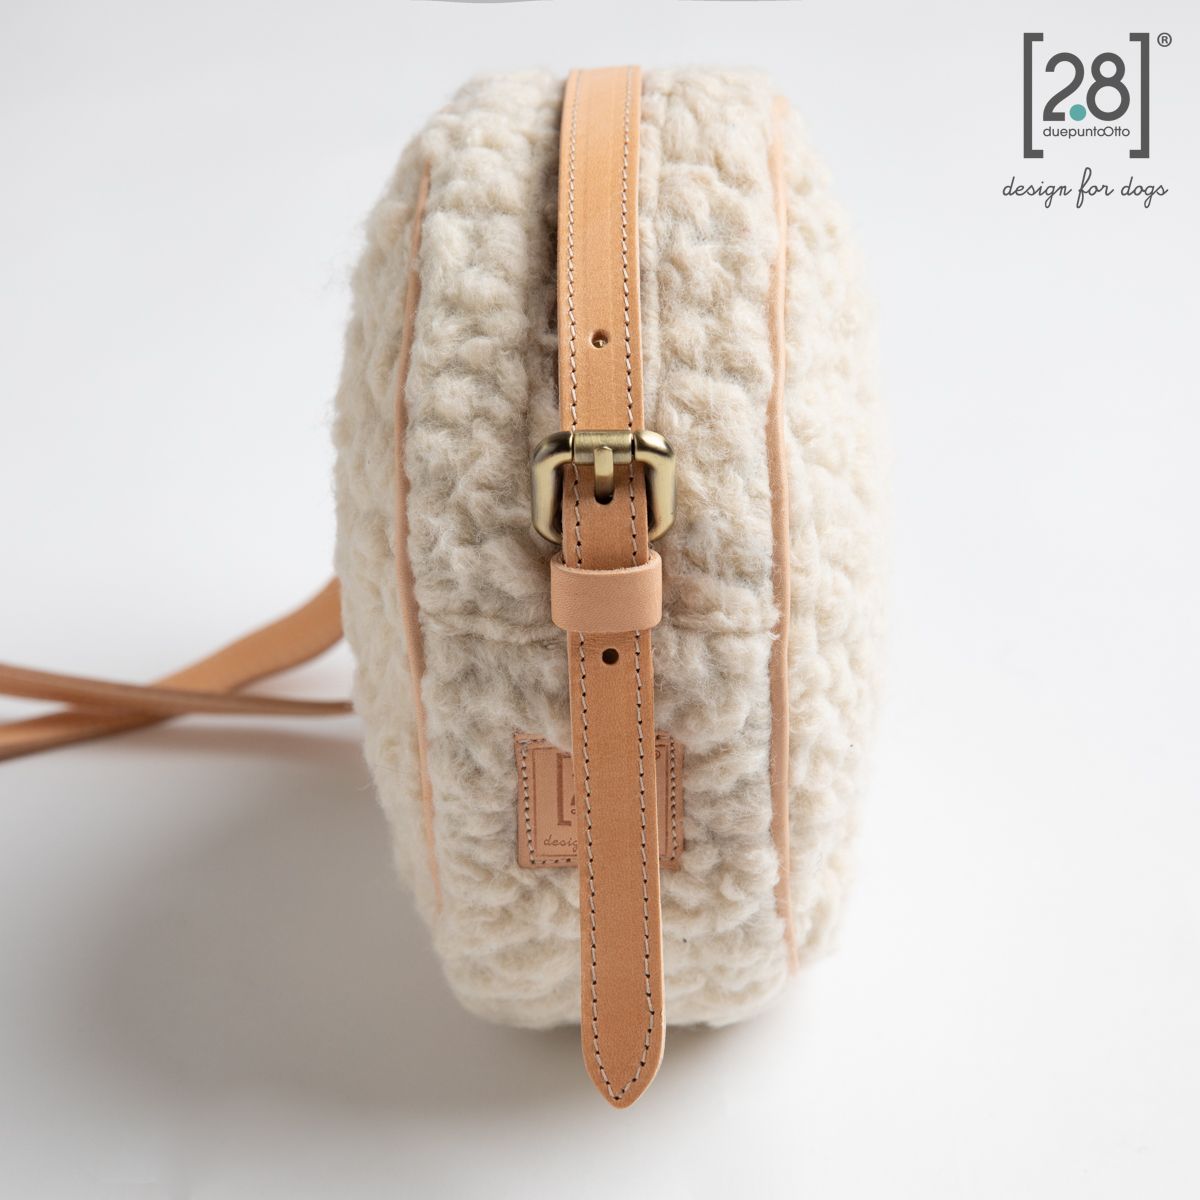 2.8 duepuntootto Mini Margaret Boucle Wool Round Bag hochwertige Leckerlitasche